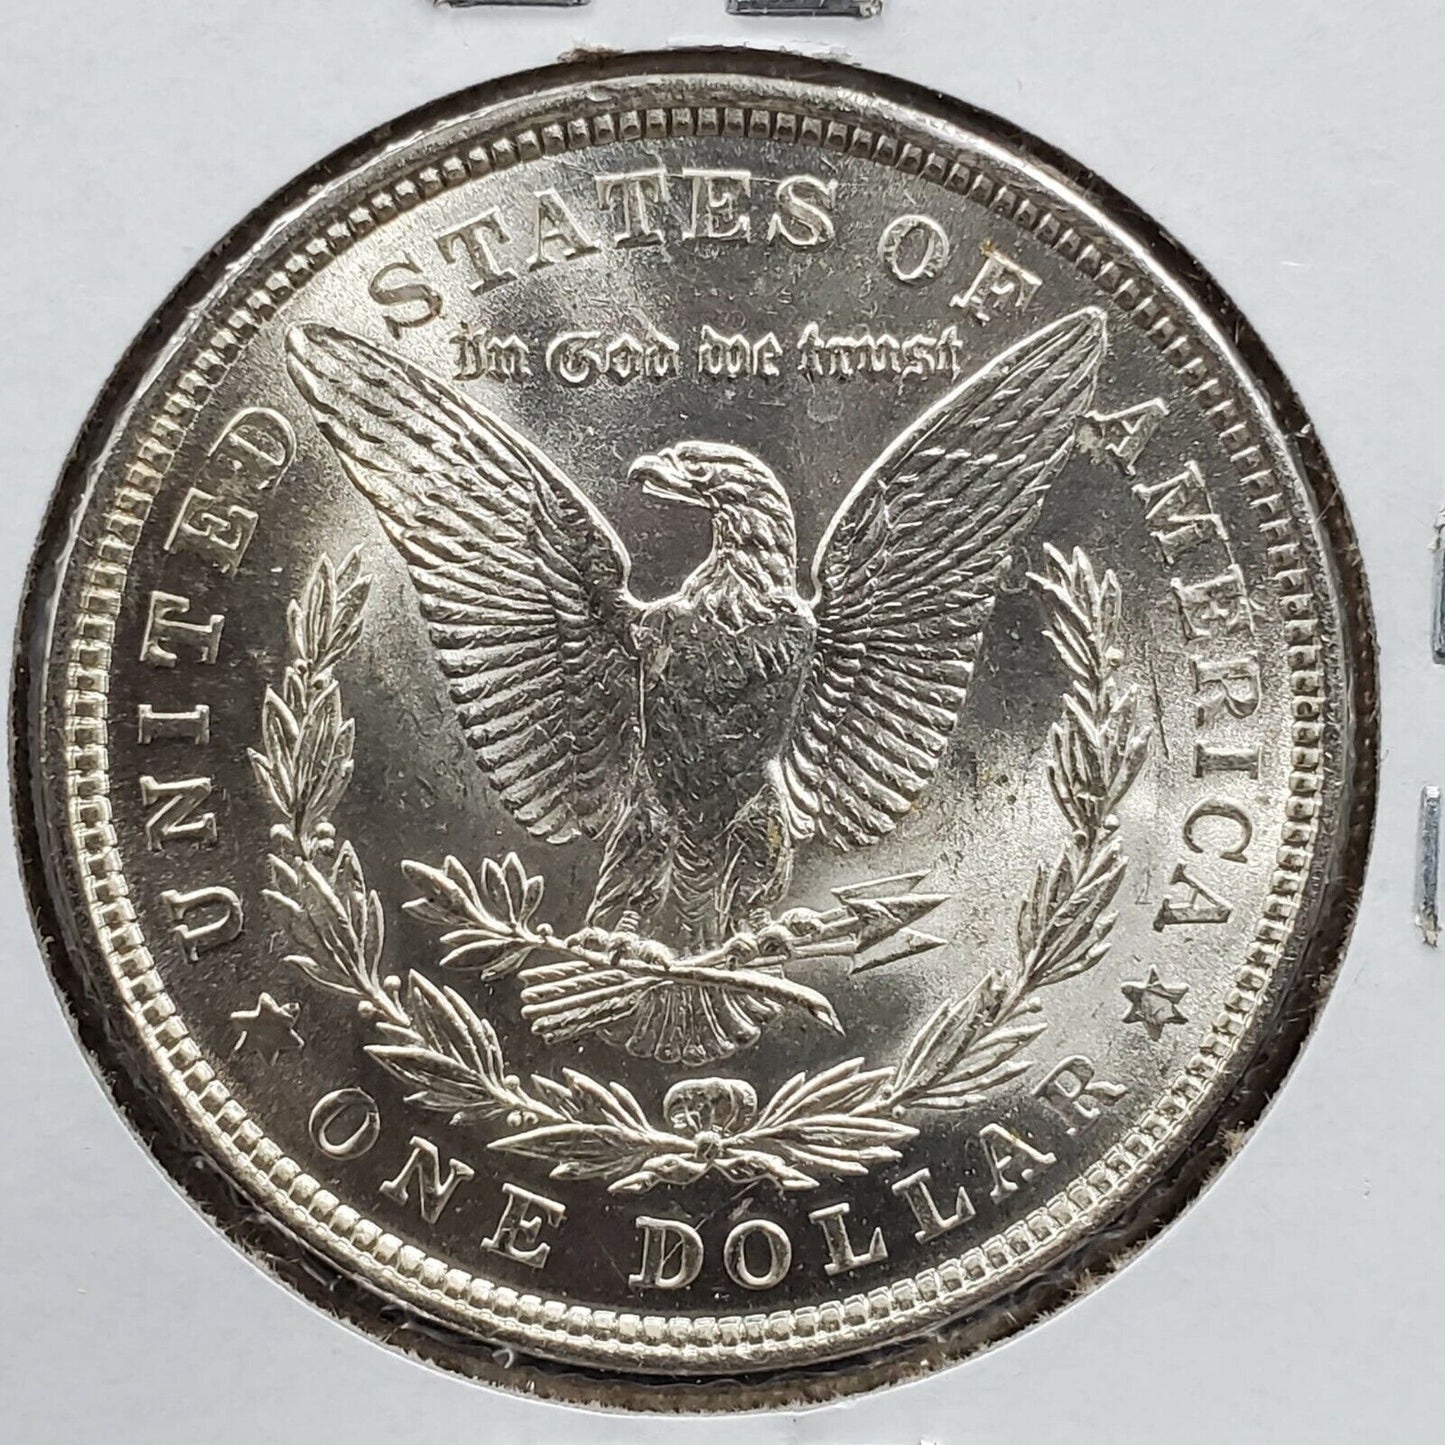 1921 P Morgan Silver Eagle Dollar Coin GEM BU UNC w/ Die Cracks VAM 100 YEARS